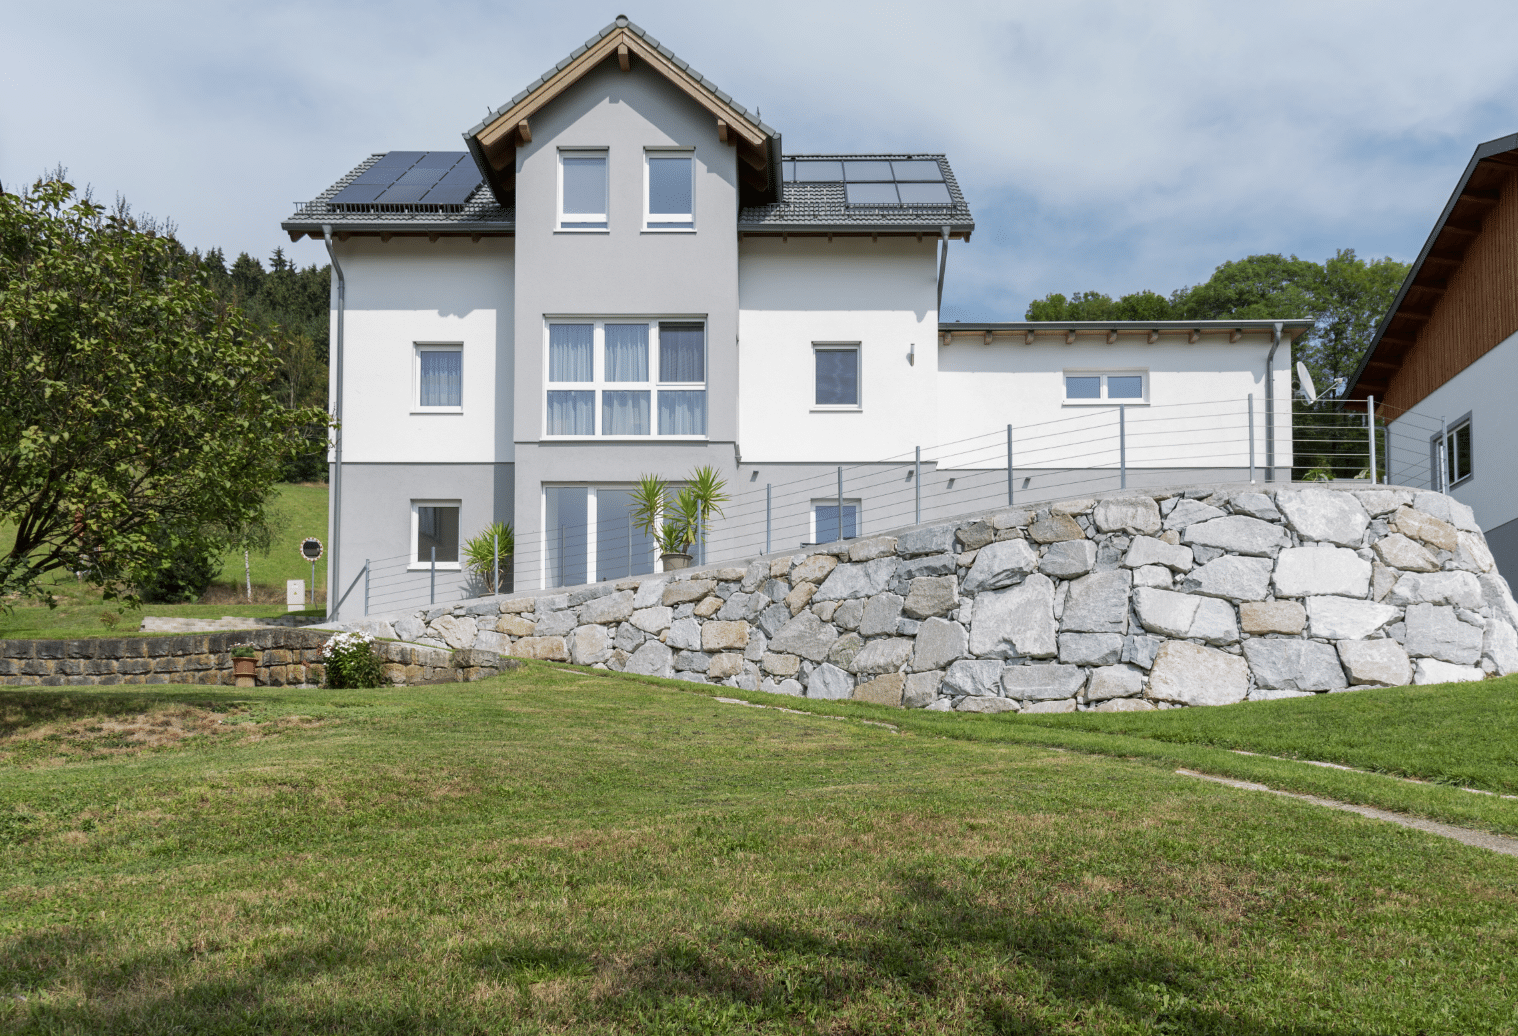 Modernes Fertigteilhaus in Hanglage mit Garten und kleinem, eckigem Erker, erbaut von Hartl Haus.